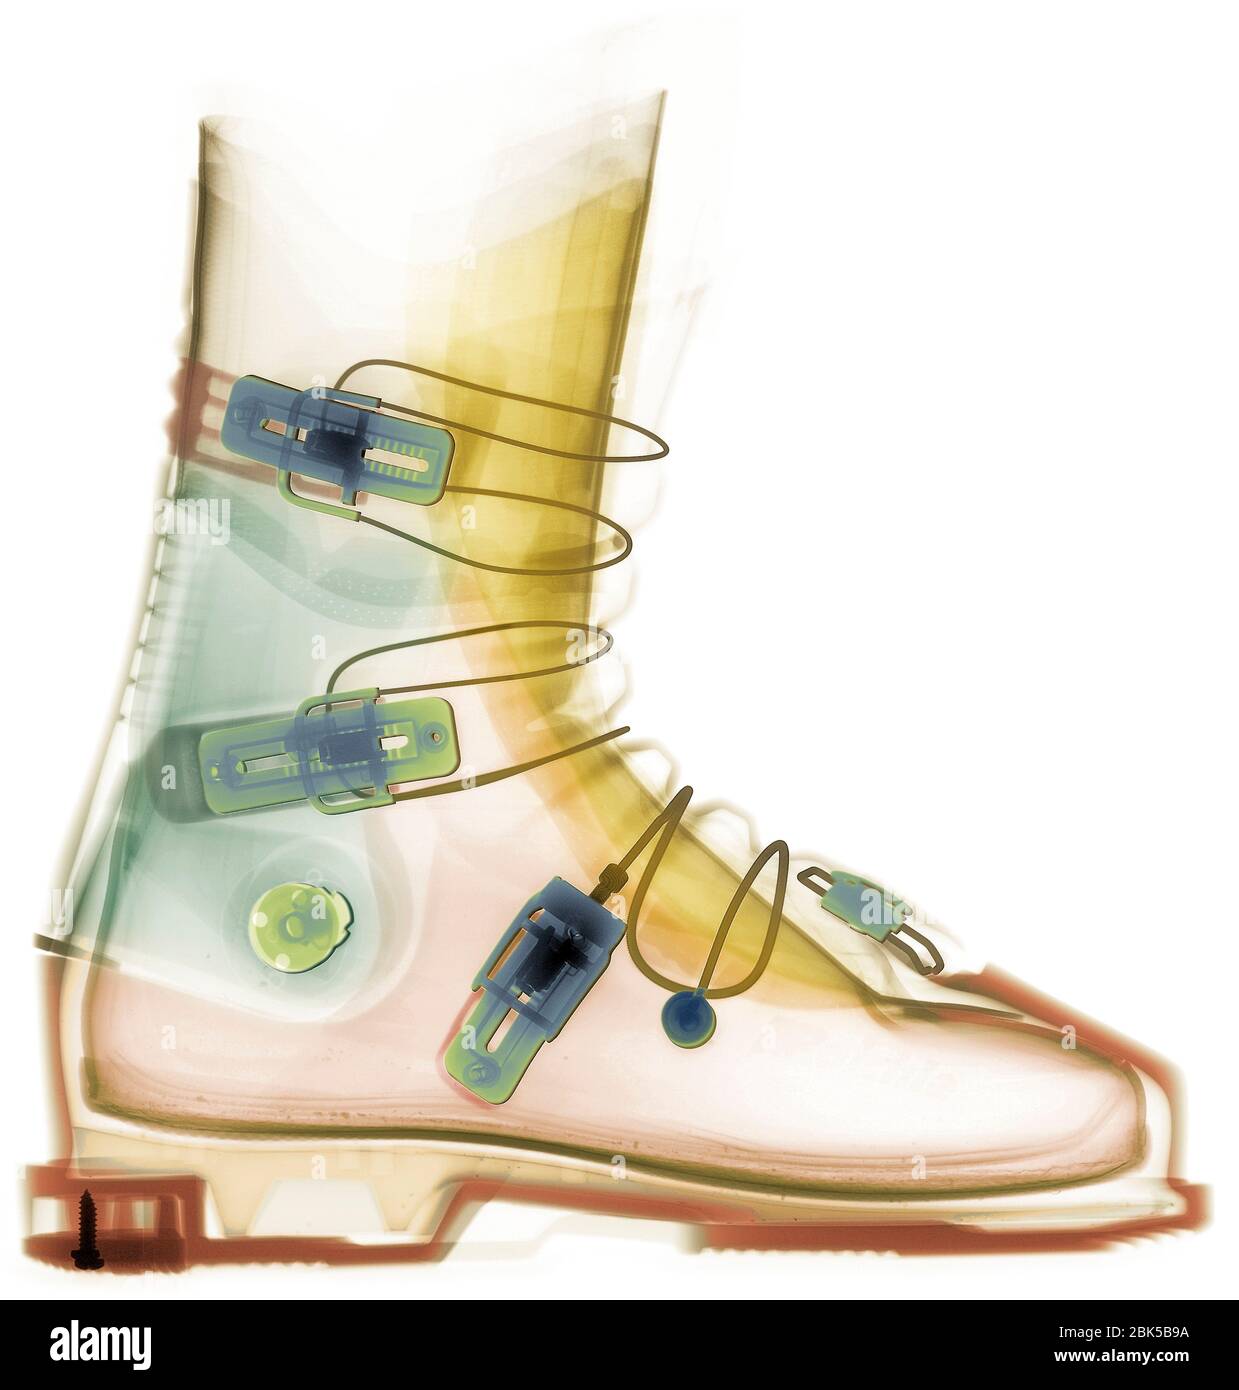 Chaussures de ski, rayons X colorés. Banque D'Images